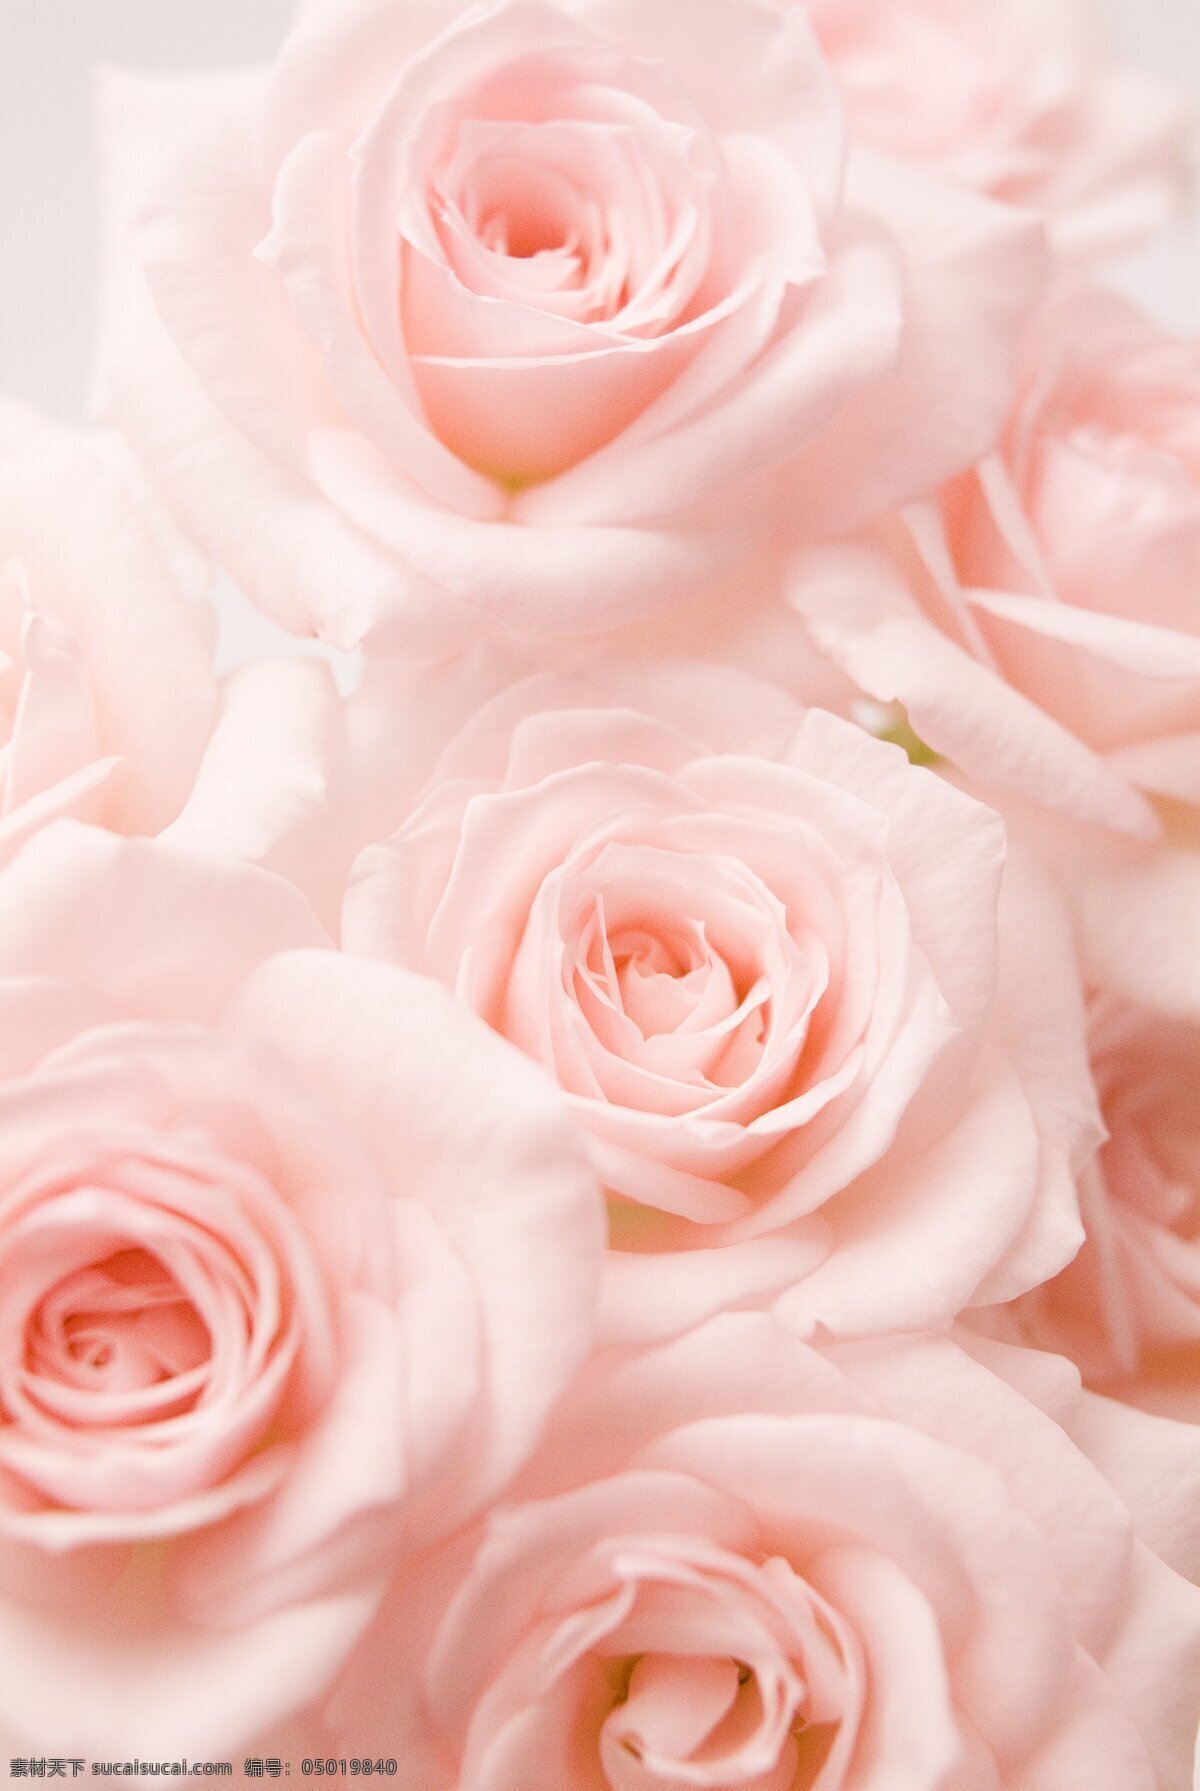 粉玫瑰花束 玫瑰花 粉玫瑰 花束 玫瑰 淡雅 优雅 生物世界 花草